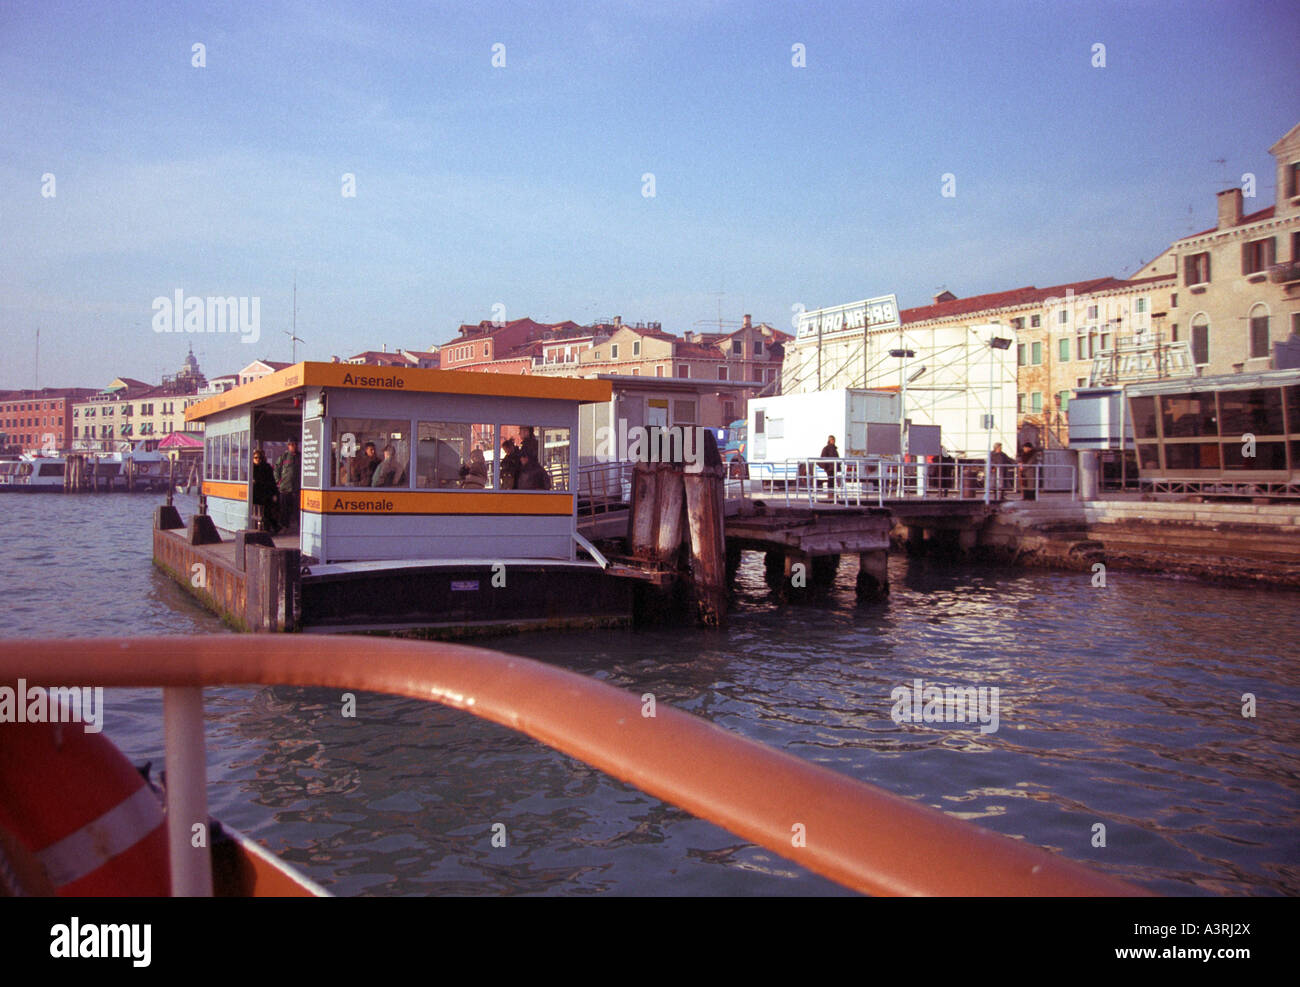 Arsenale vaporetti stop in Venice Stock Photo